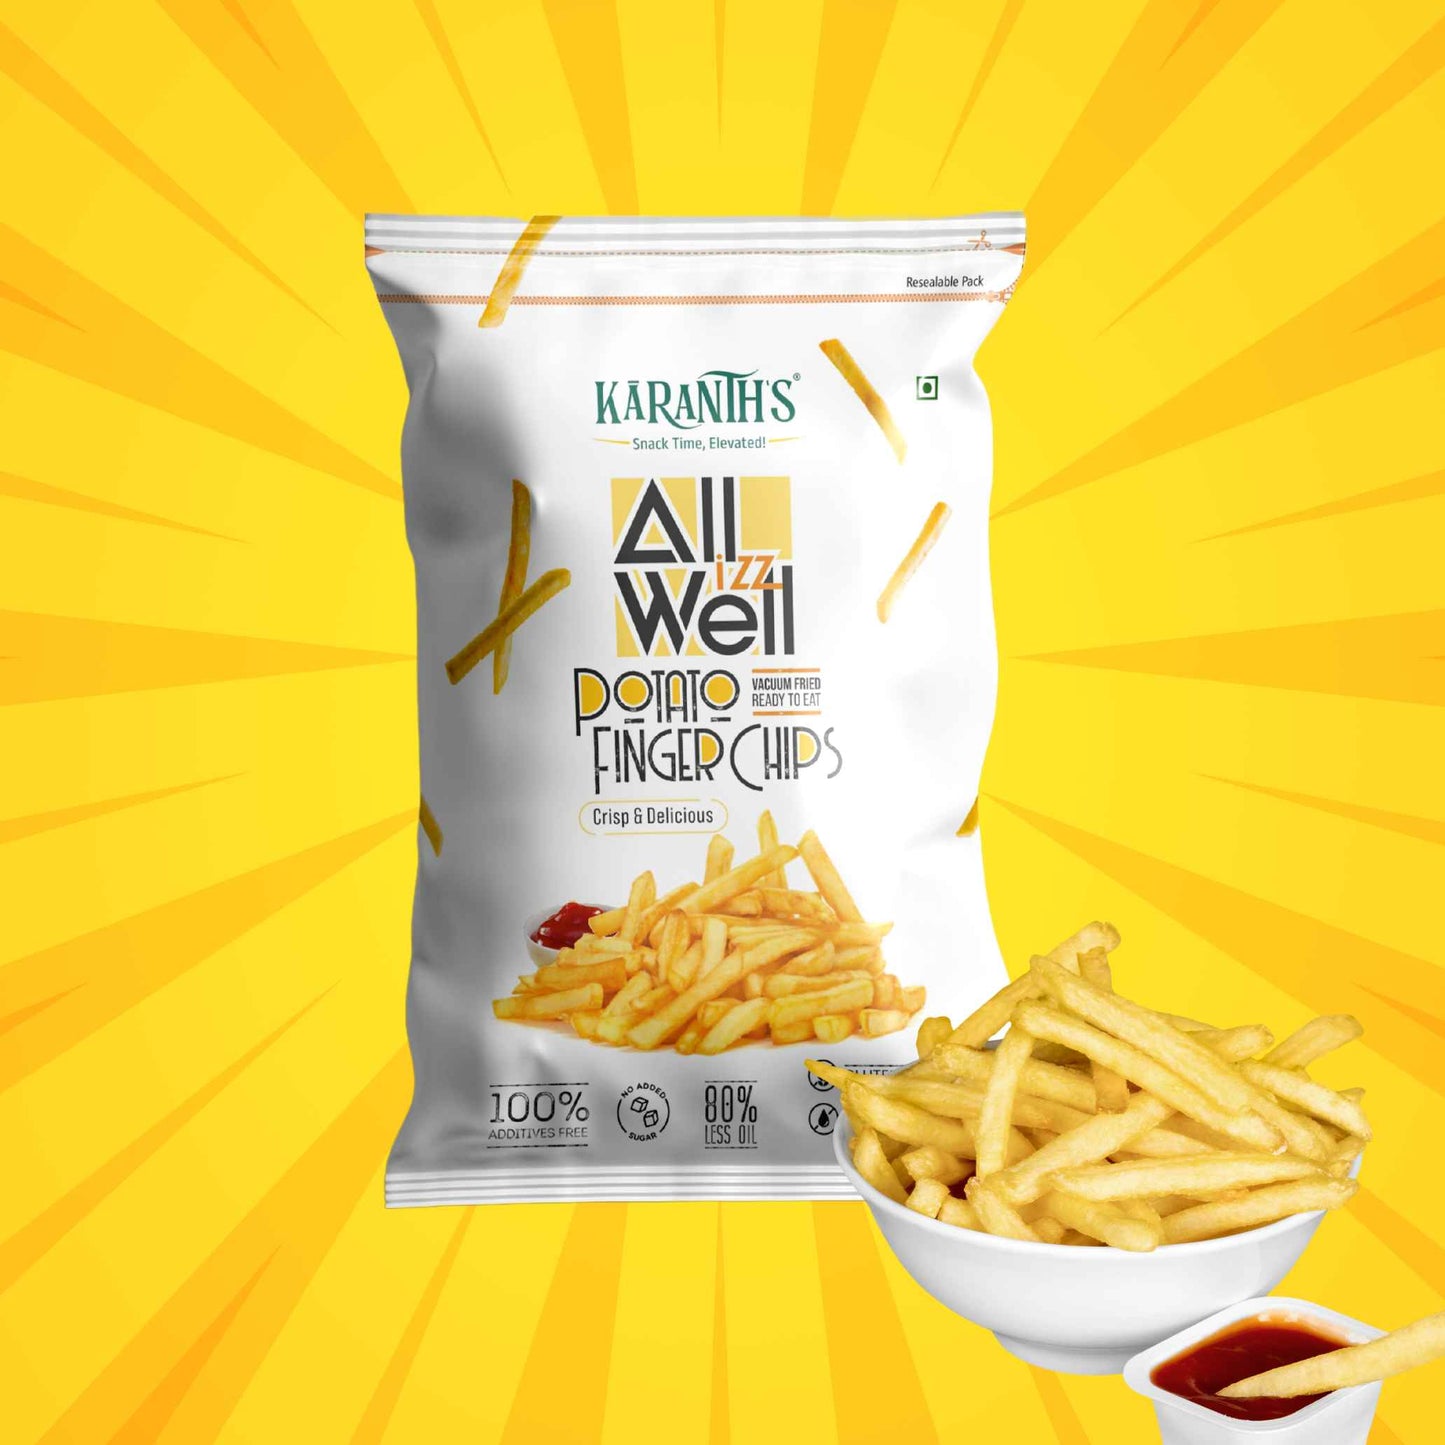 All Izz Well Potato Finger Chips - 35 gms